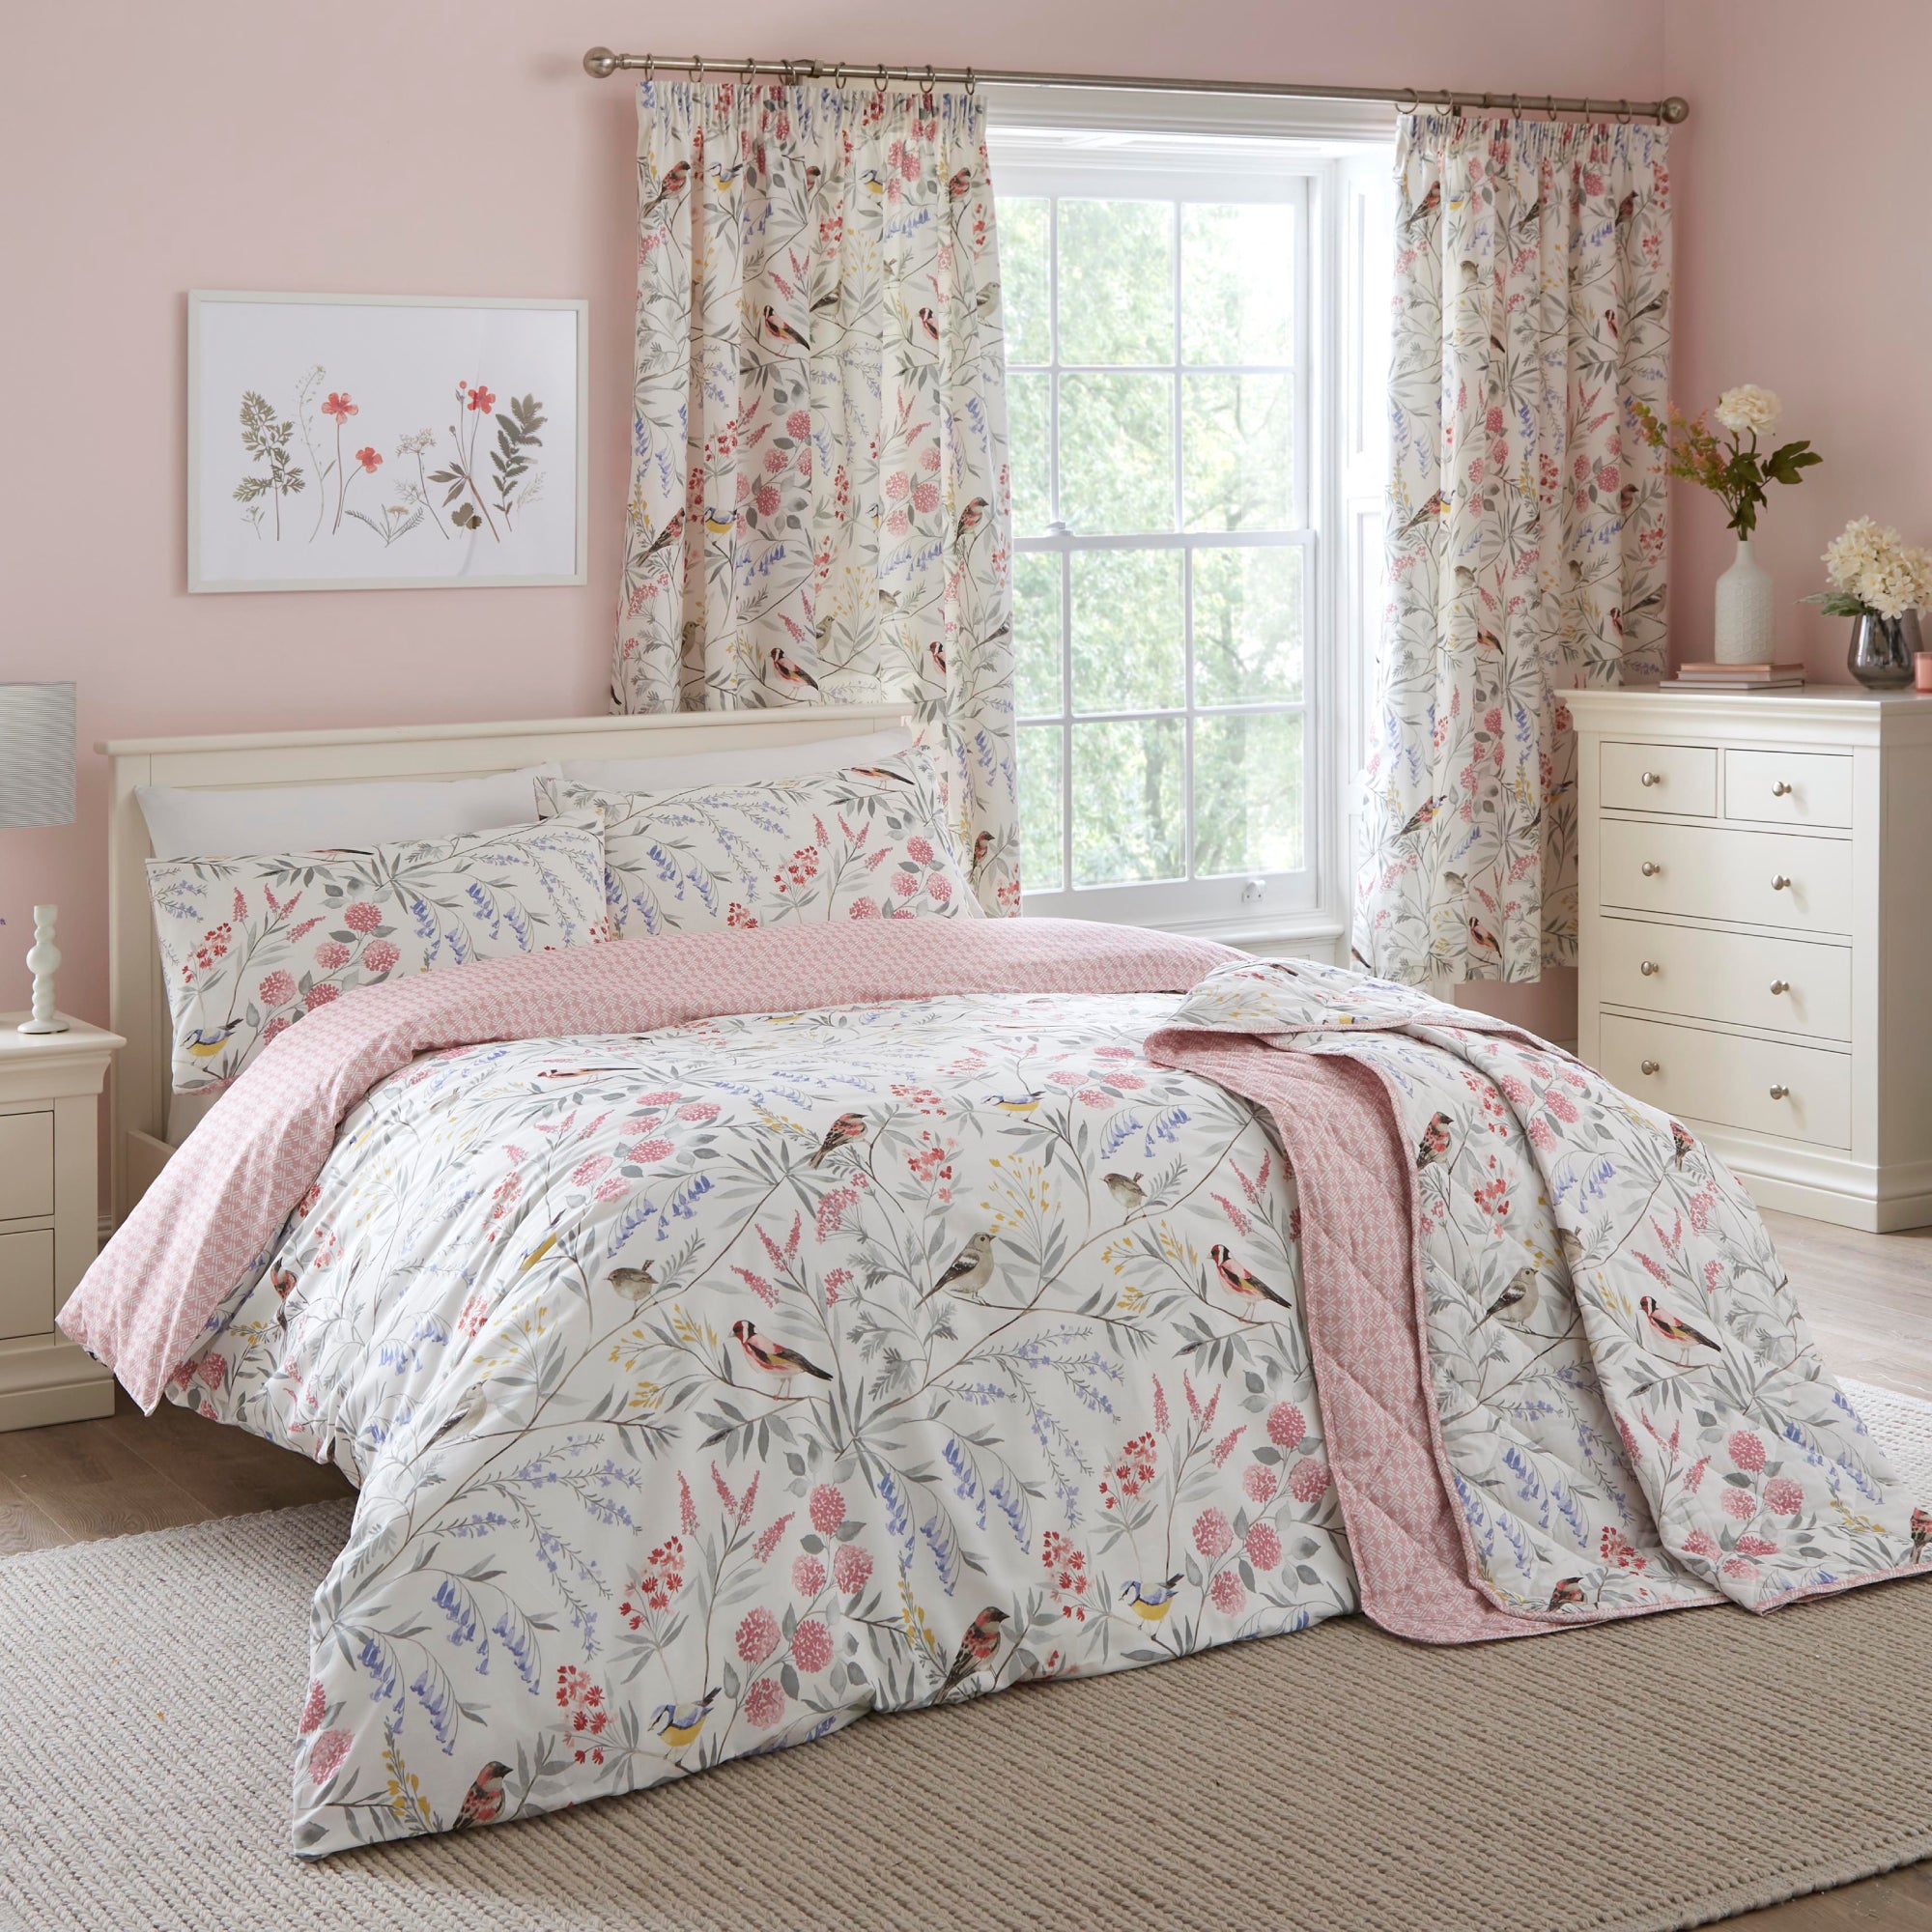 Bedspread Caraway by Dreams & Drapes Design in Pink